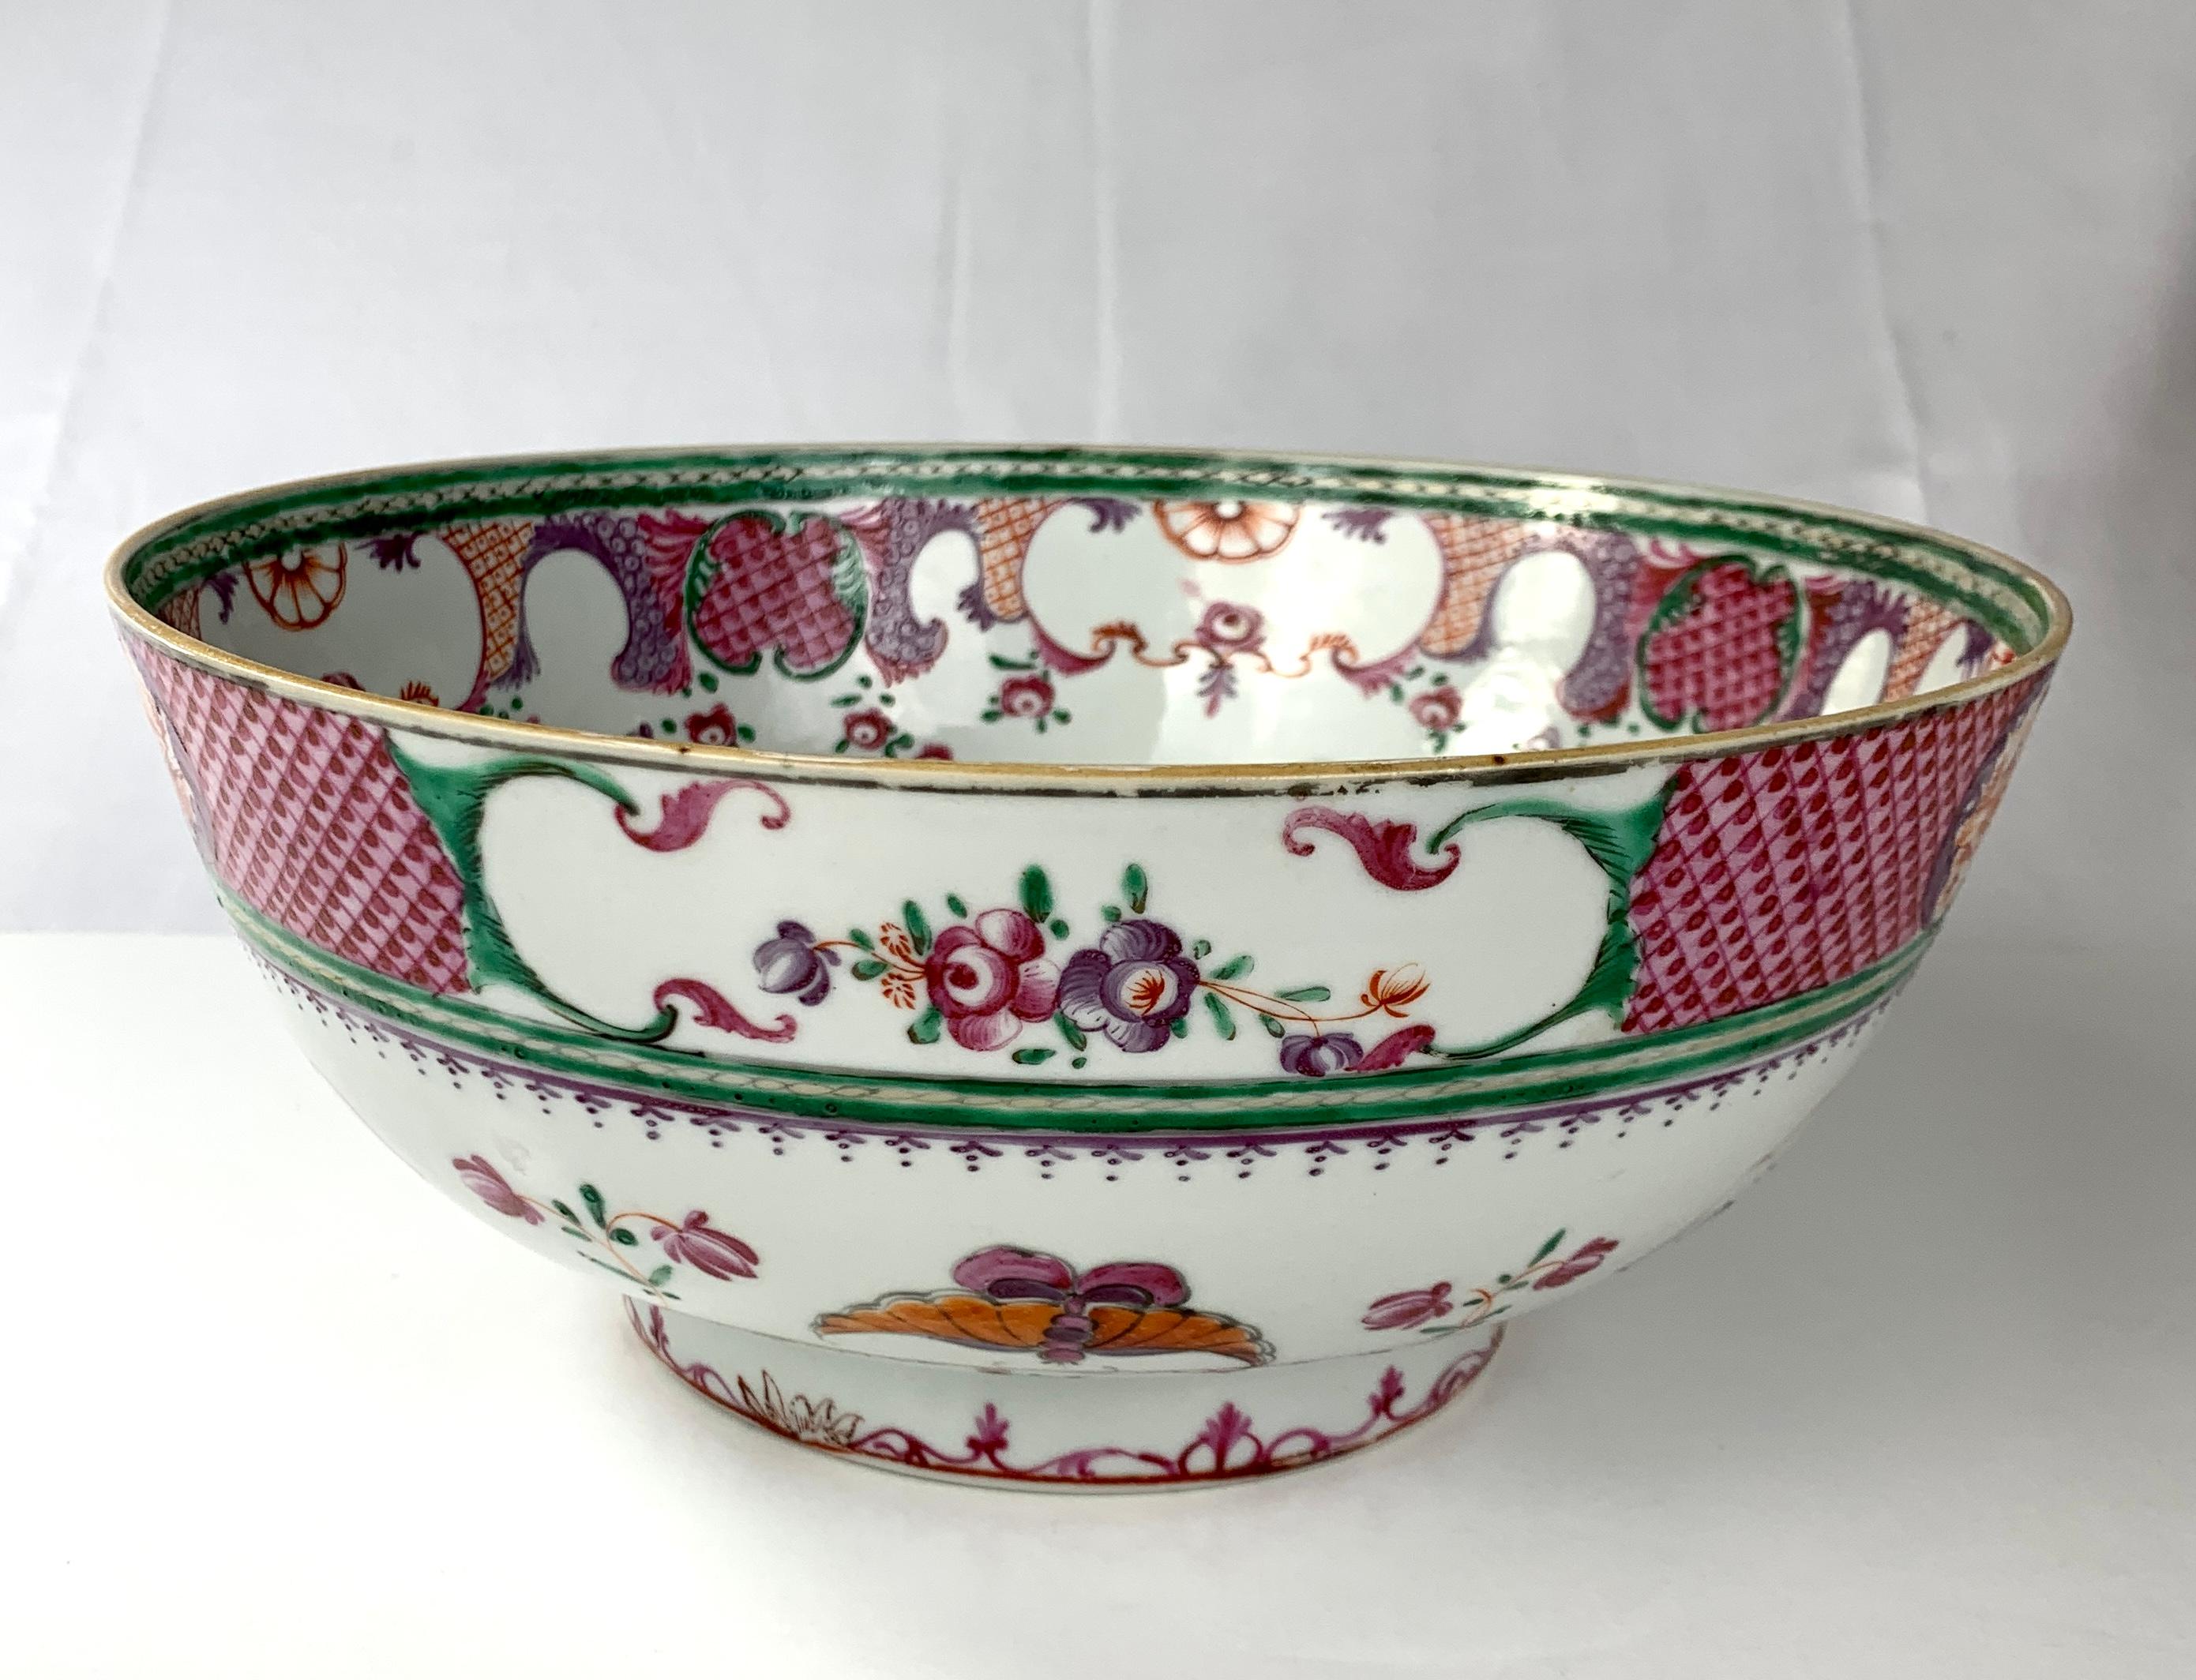 Ce joli bol en porcelaine chinoise a été peint à la main dans les tons violets, orange et verts de la famille rose.
L'extérieur de ce magnifique bol présente une bande supérieure de motifs de diamants violets insérés dans des panneaux de pivoines en